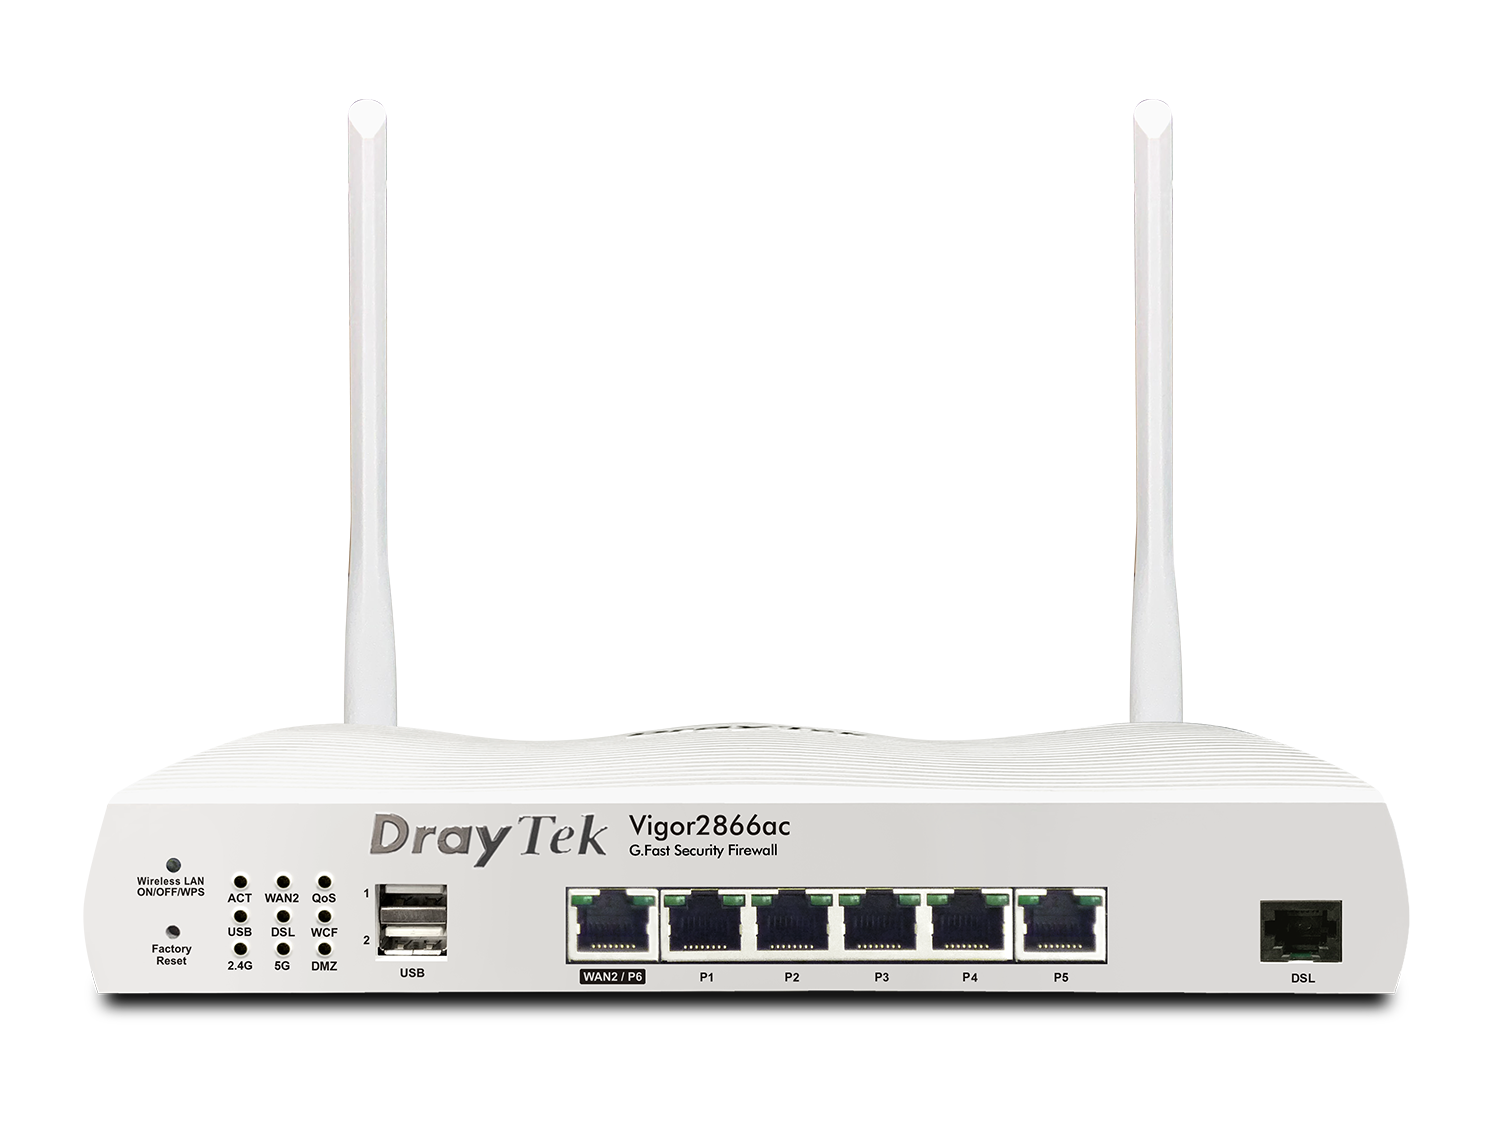 DrayTek  Vigor2866 - Dual WAN VDSL Router with built-in G.fast modem